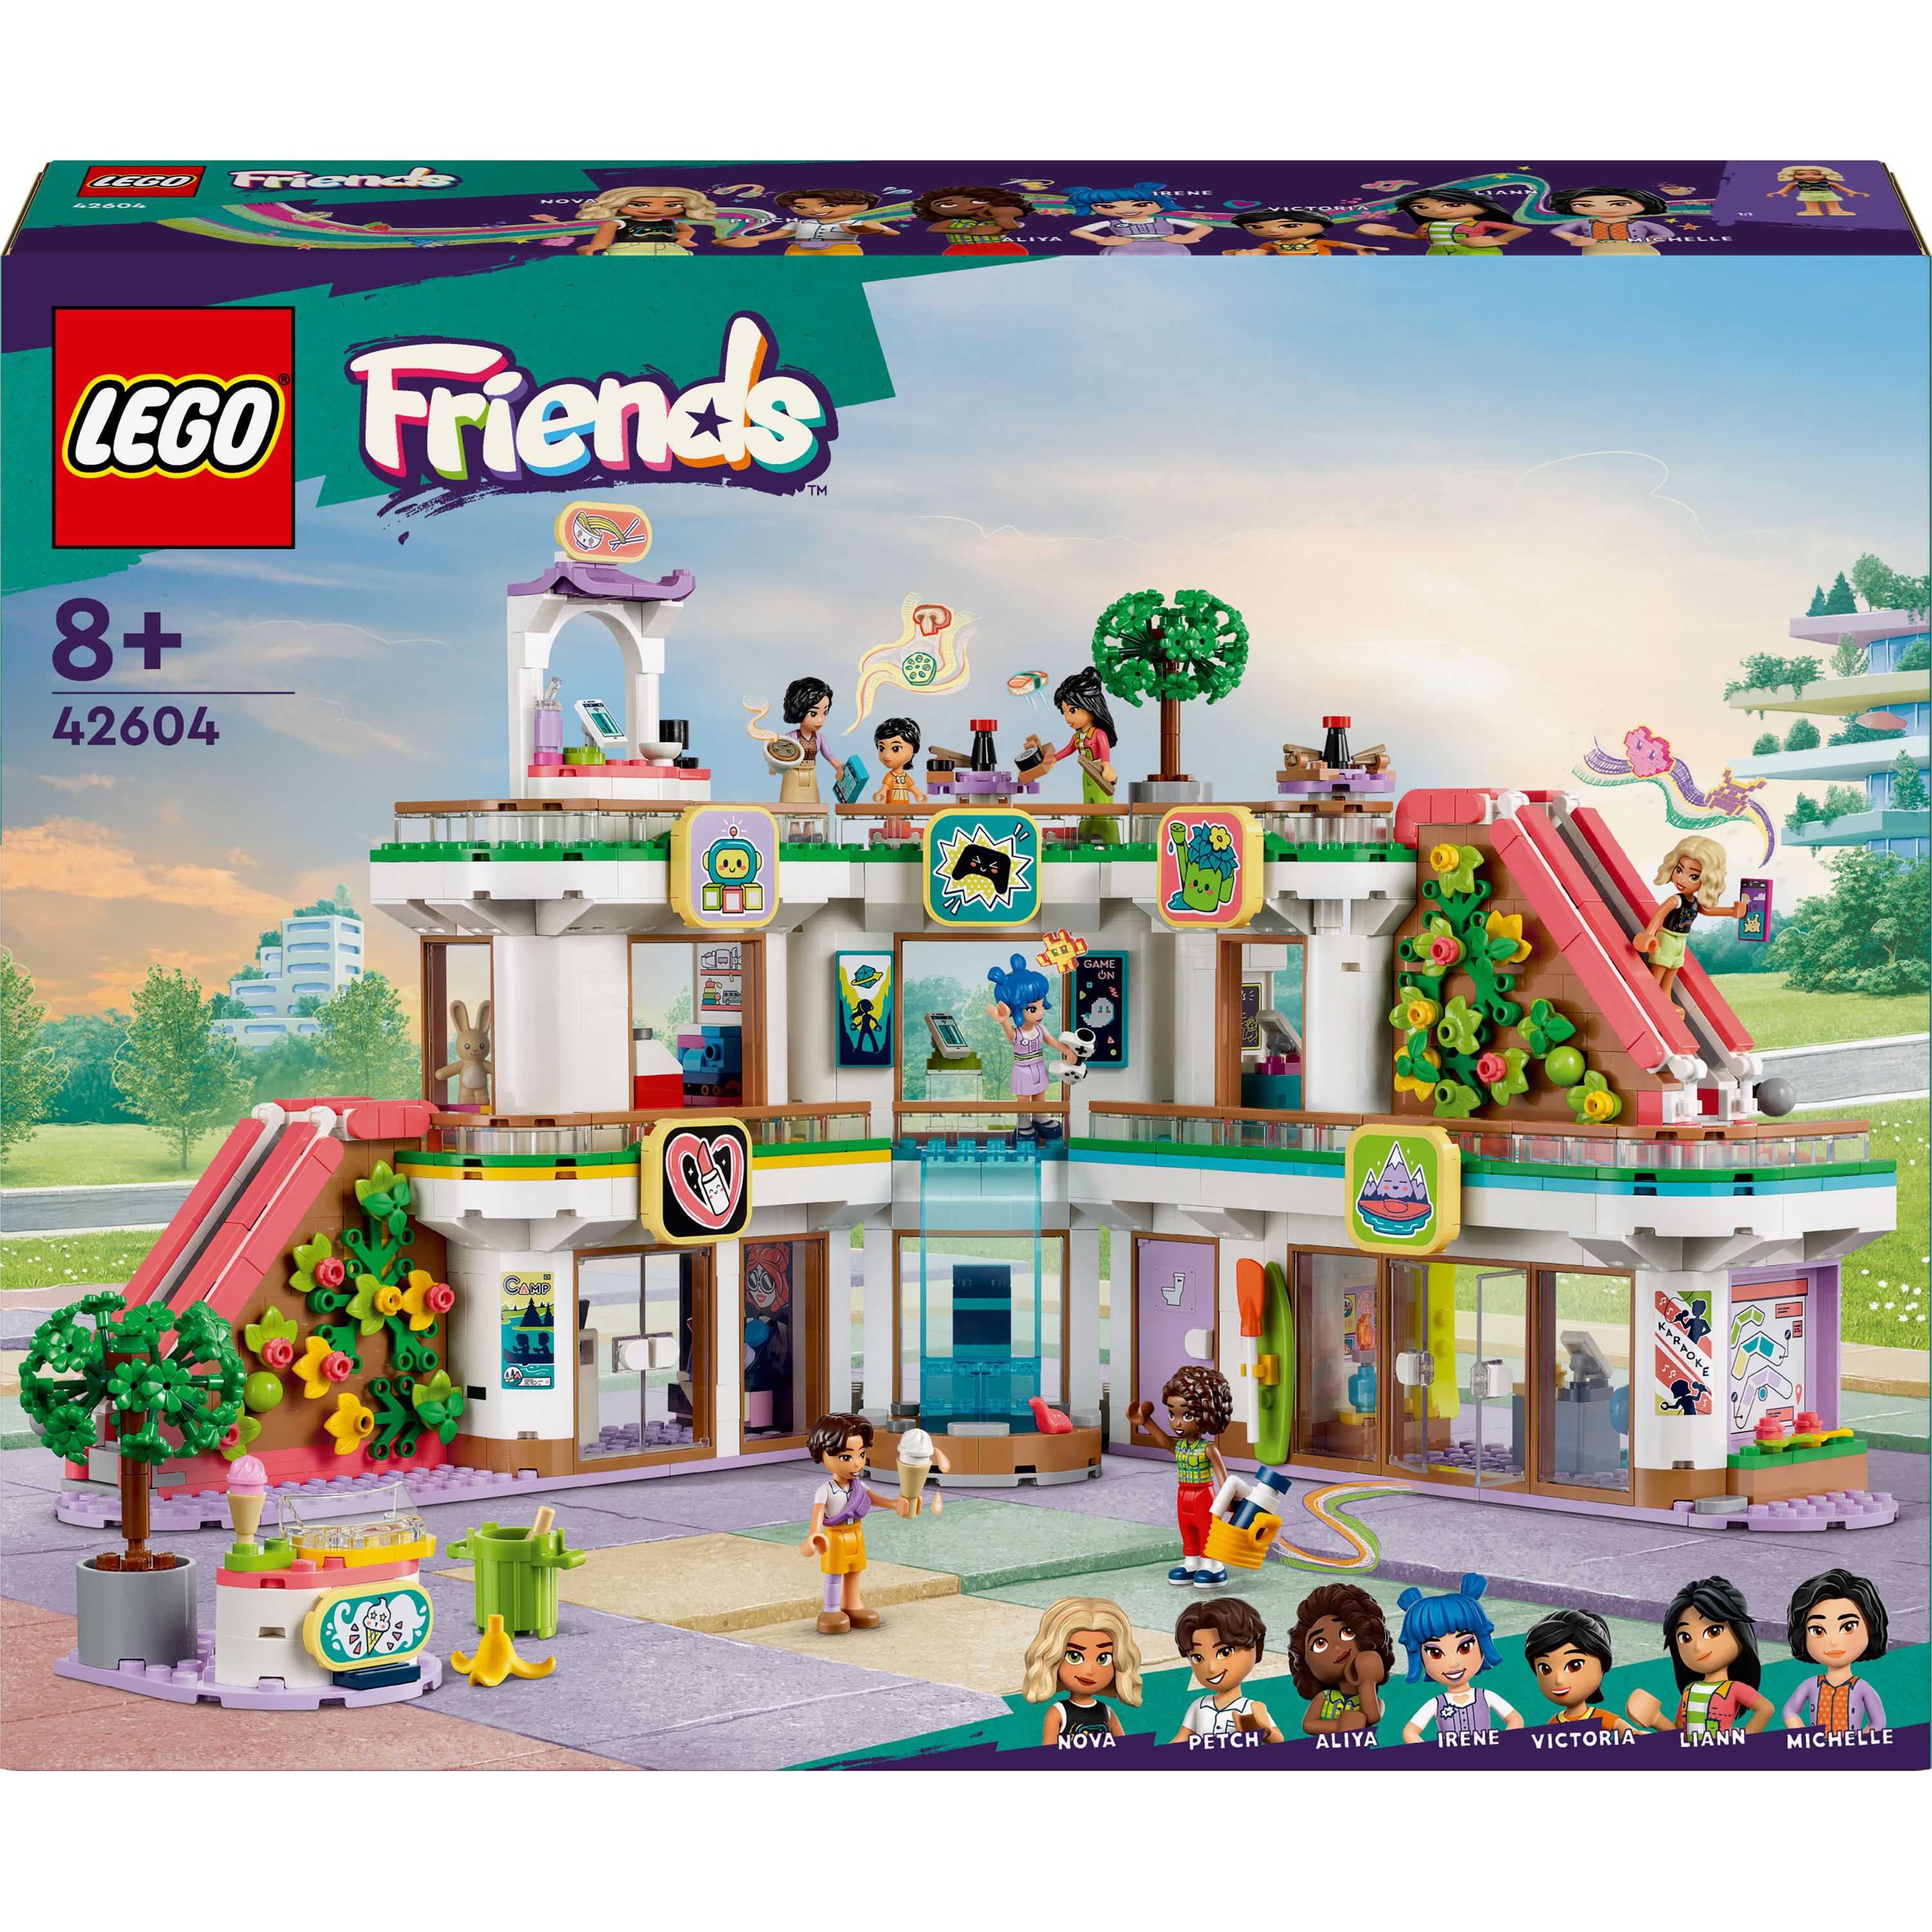 Конструктор LEGO Friends Торговый центр в Хартлейк-Сити 1237 детали (42604) - фото 1